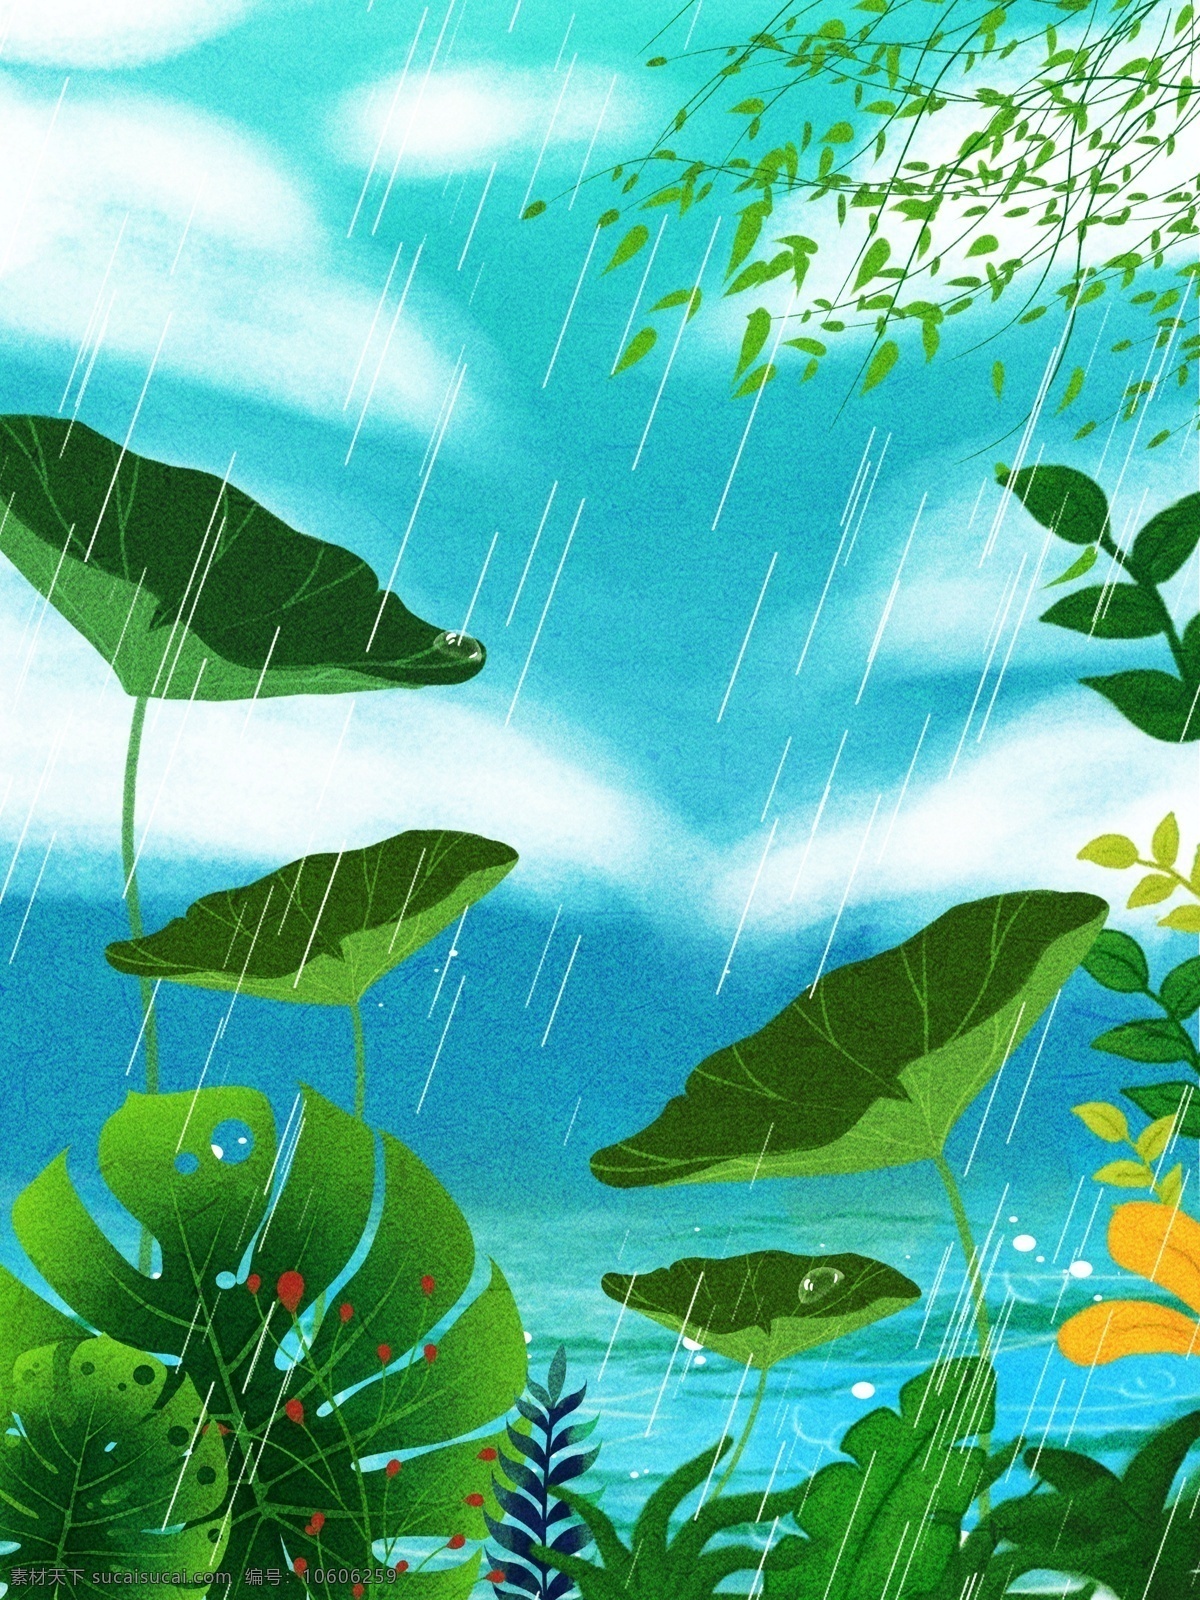 清新 雨季 荷叶 插画 背景 植物背景 唯美 绿地背景 蓝天白云 叶子 河边 山水风景